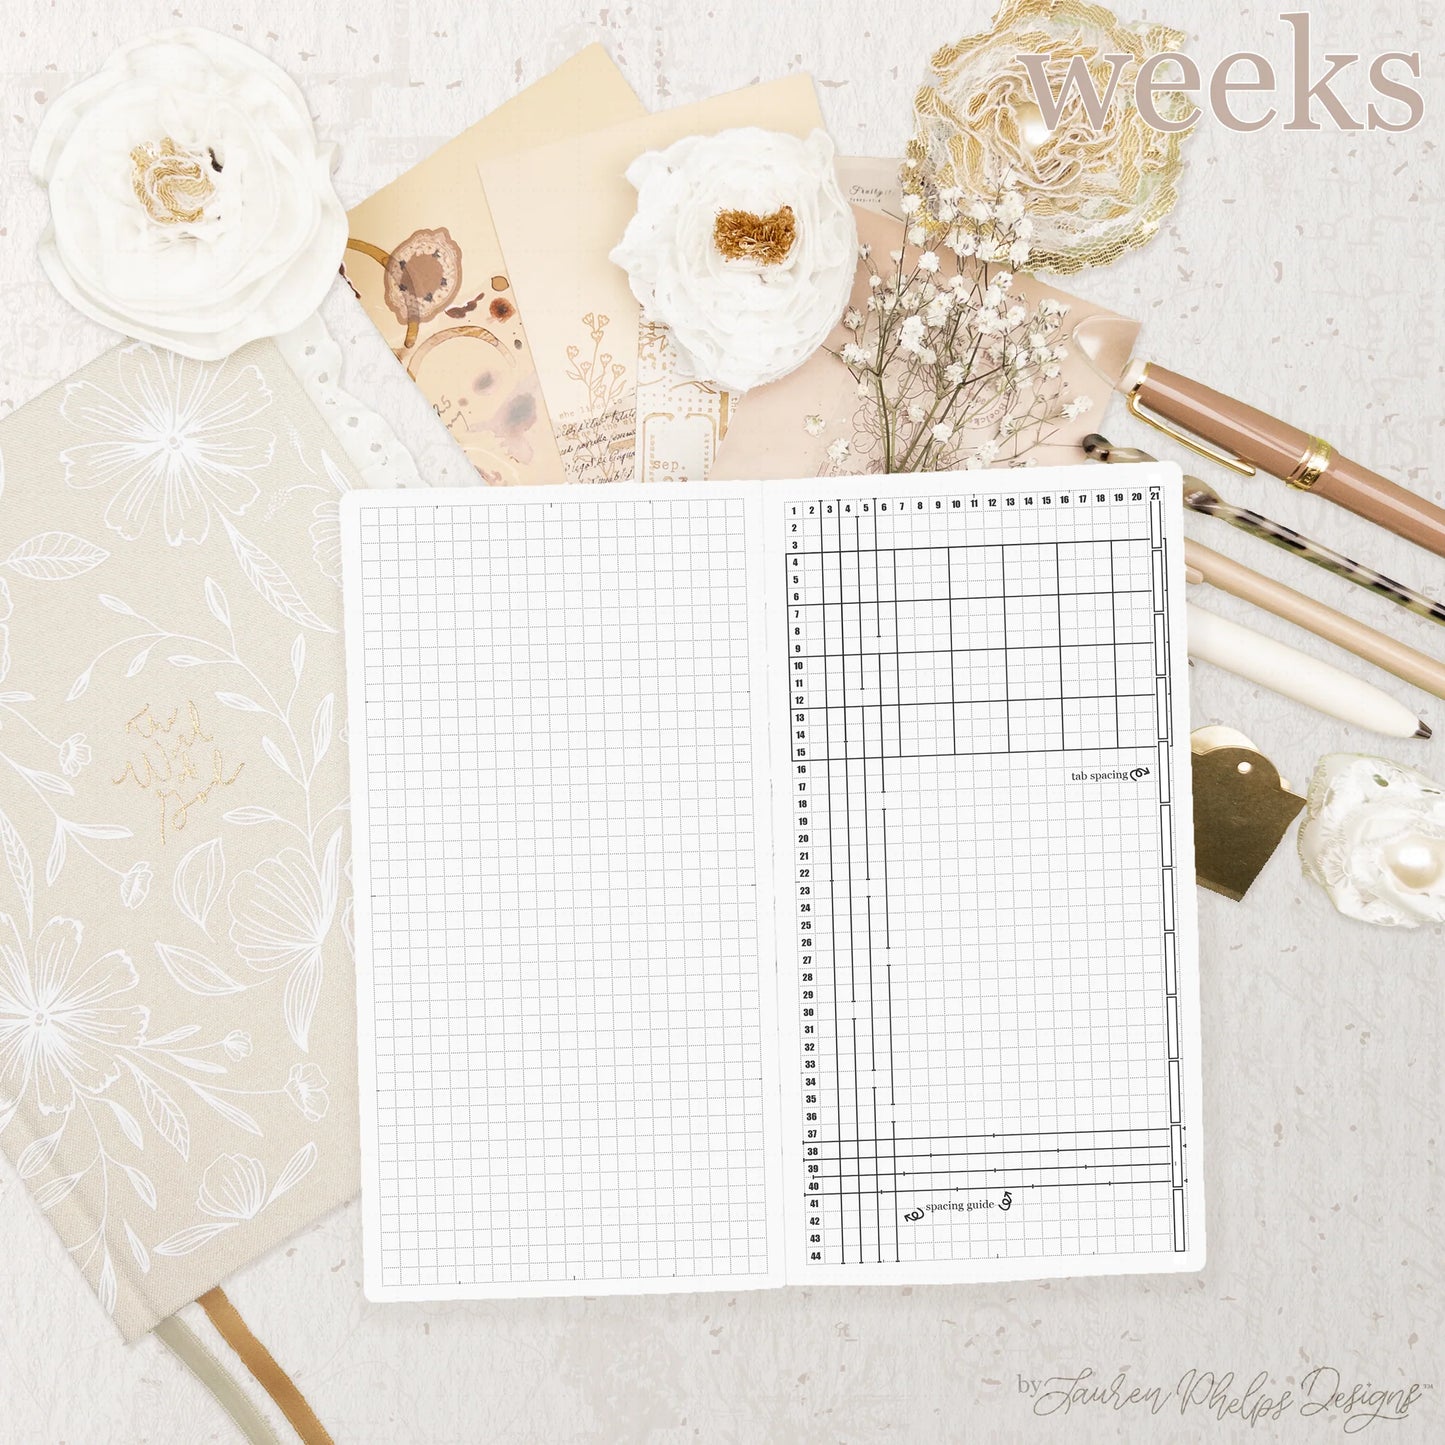 Weeks Live | Plan | Dream™ Notebook by Lauren Phelps Designs